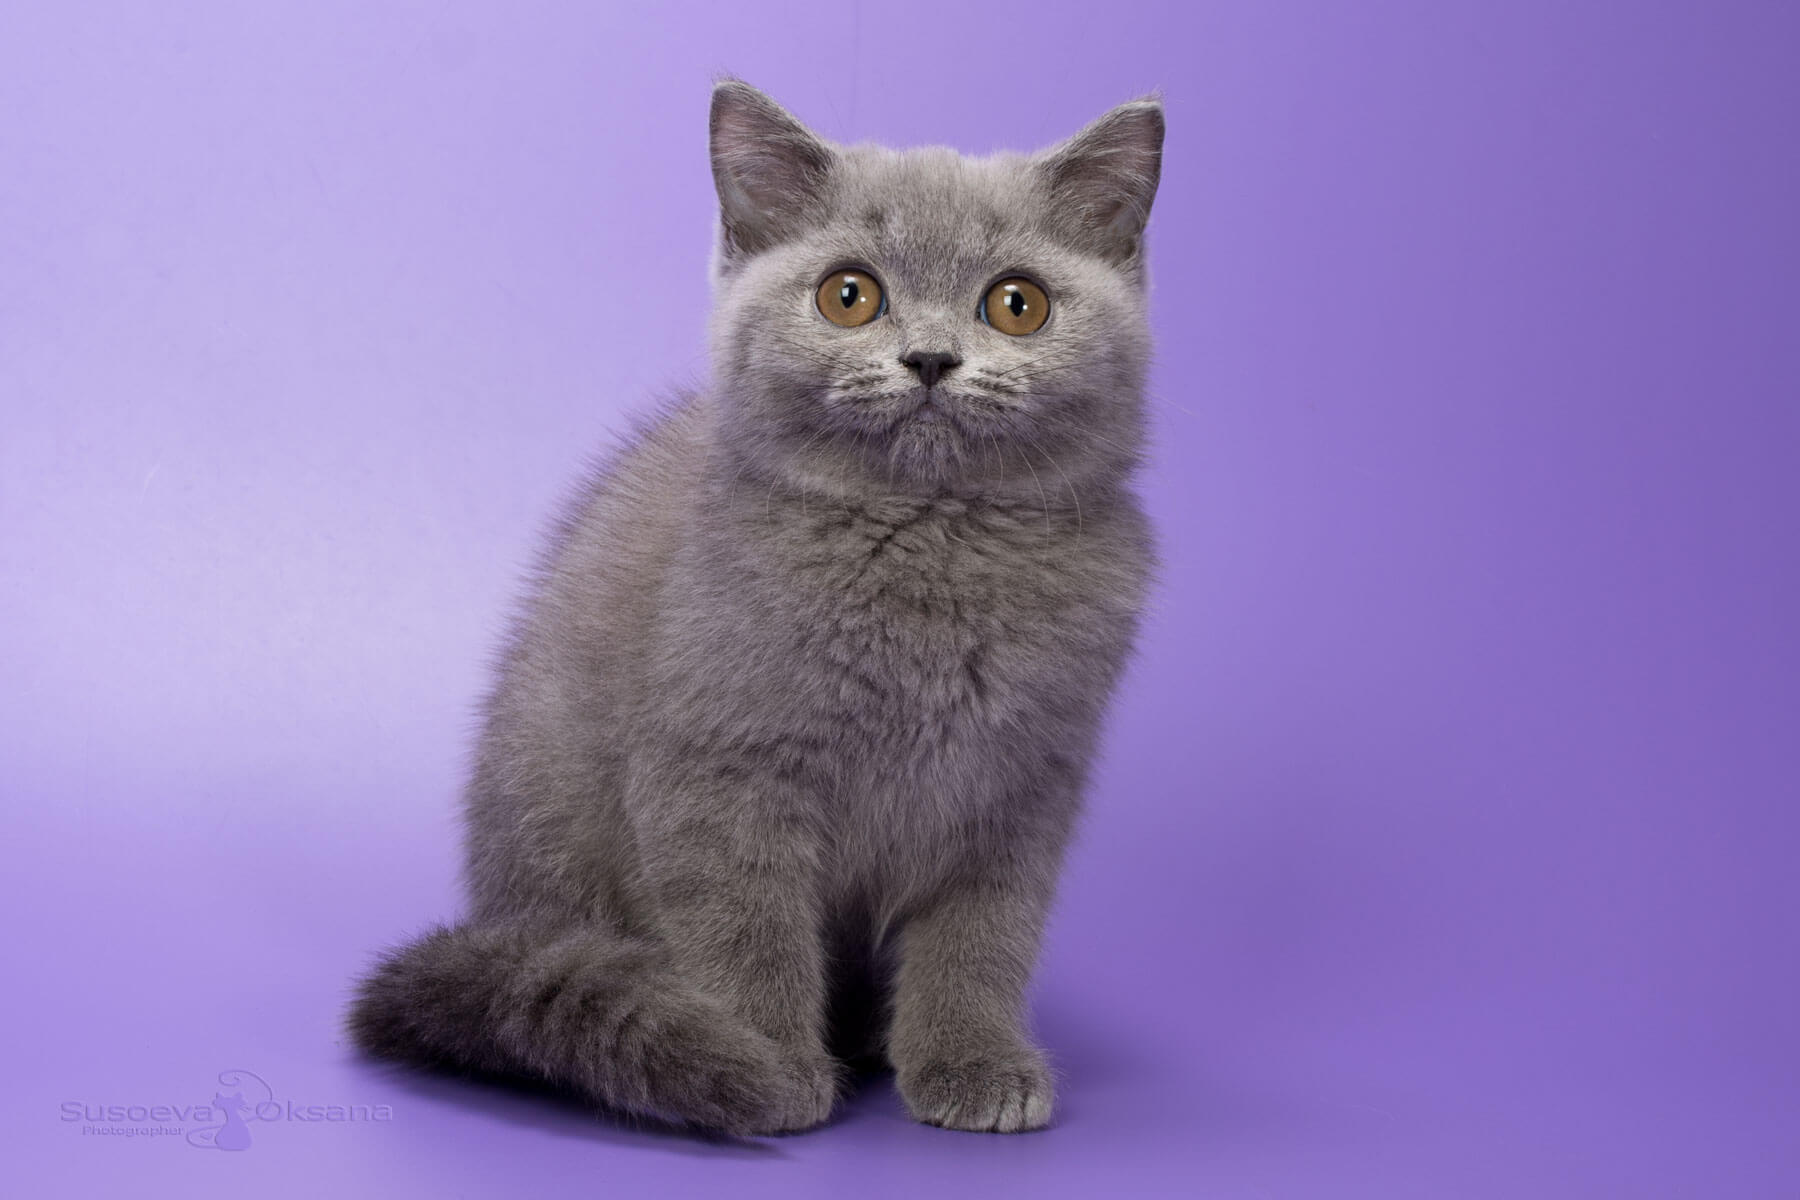 Британский голубой котёнок кот, фото, цена, купить в Минске голубого британского котёнка-кота Ian